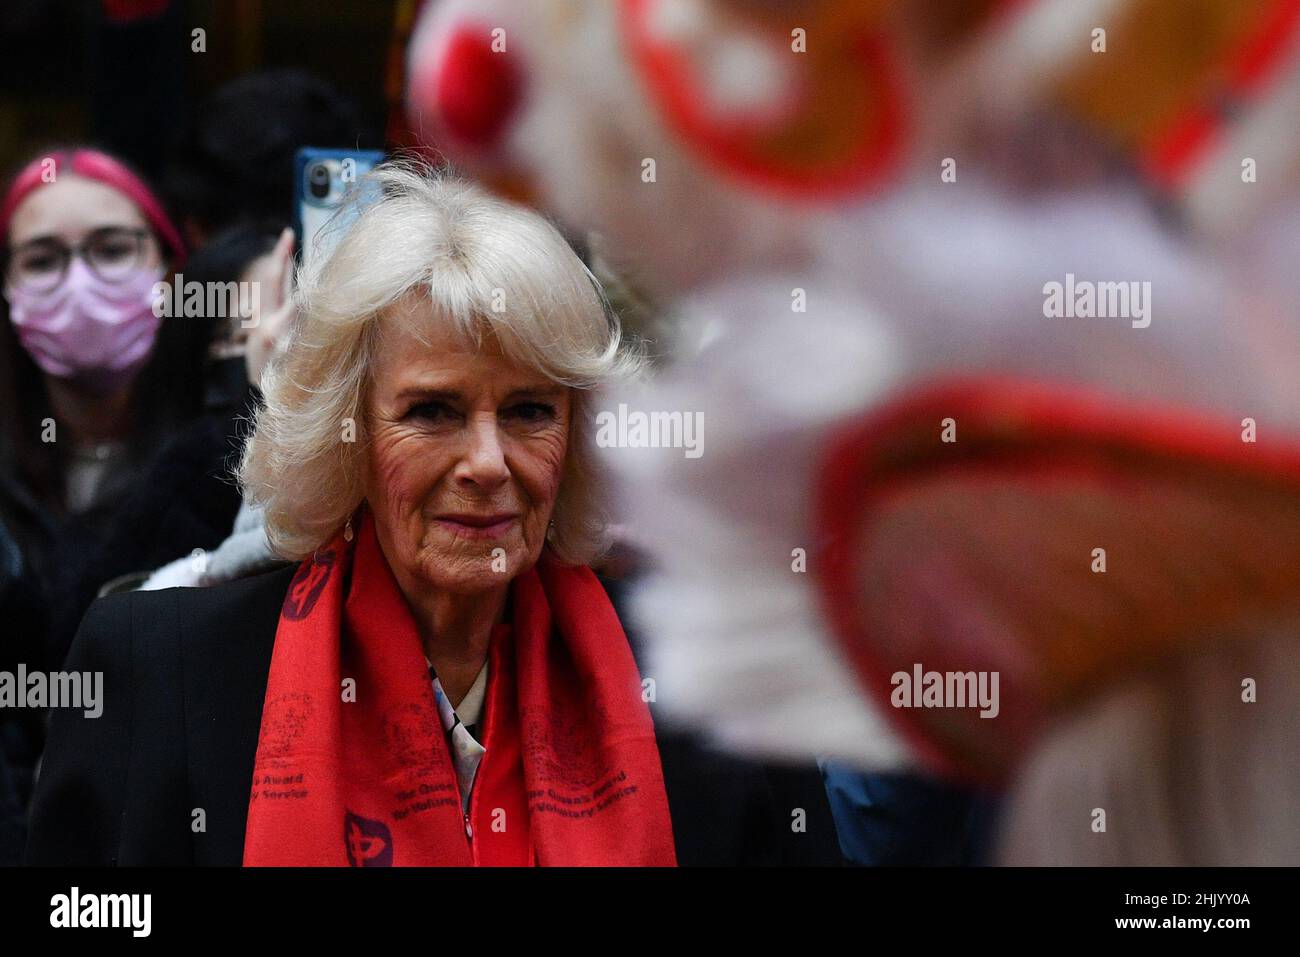 Die Herzogin von Cornwall bei einem Besuch des Prinzen von Wales in Chinatown, London, um das Mondneujahr zu feiern. Bilddatum: Dienstag, 1. Februar 2022. Stockfoto